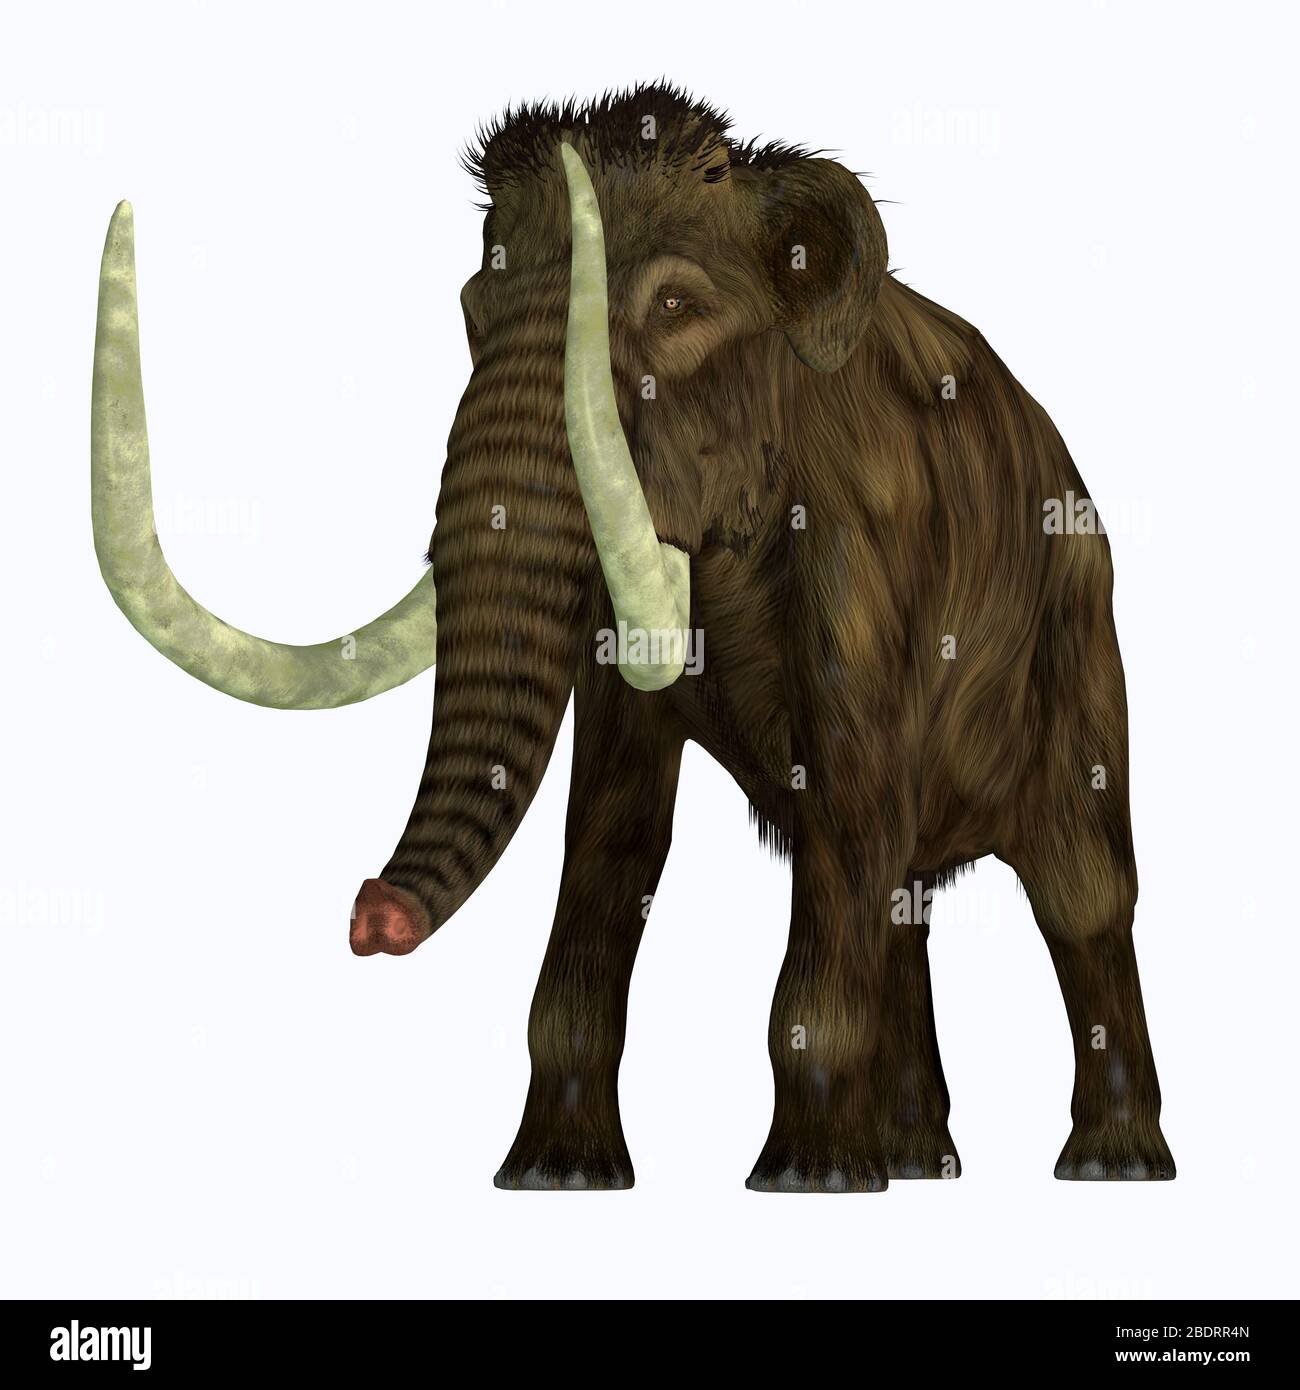 Der Woolly Mammoth war ein herbivorer Elefant, der in Asien, Sibirien und Nordamerika während des Pliozäns und Pleistozäns lebte. Stockfoto